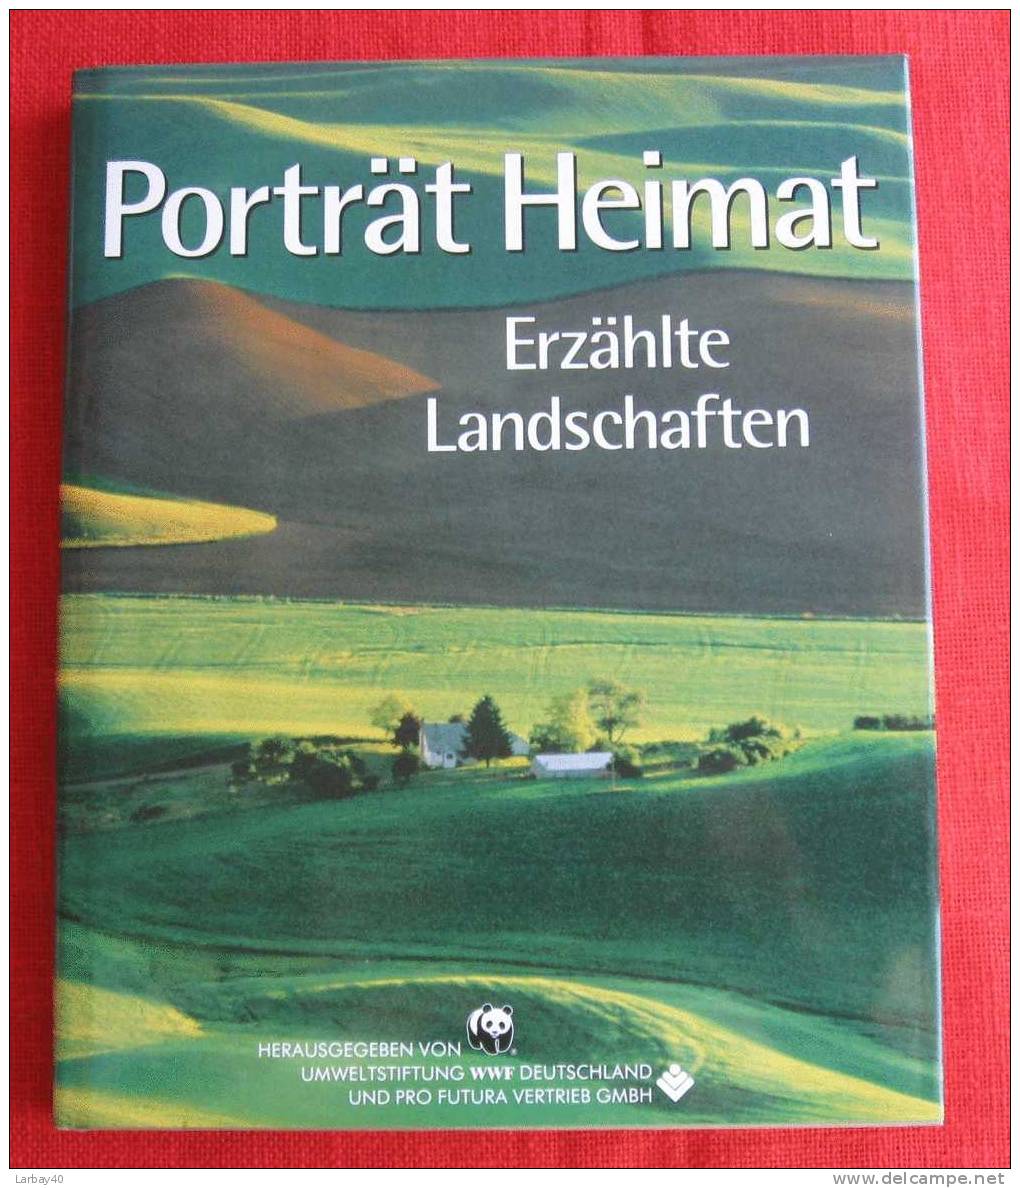 Portrat Heimat Erzahlte Landschaften - Art Prints